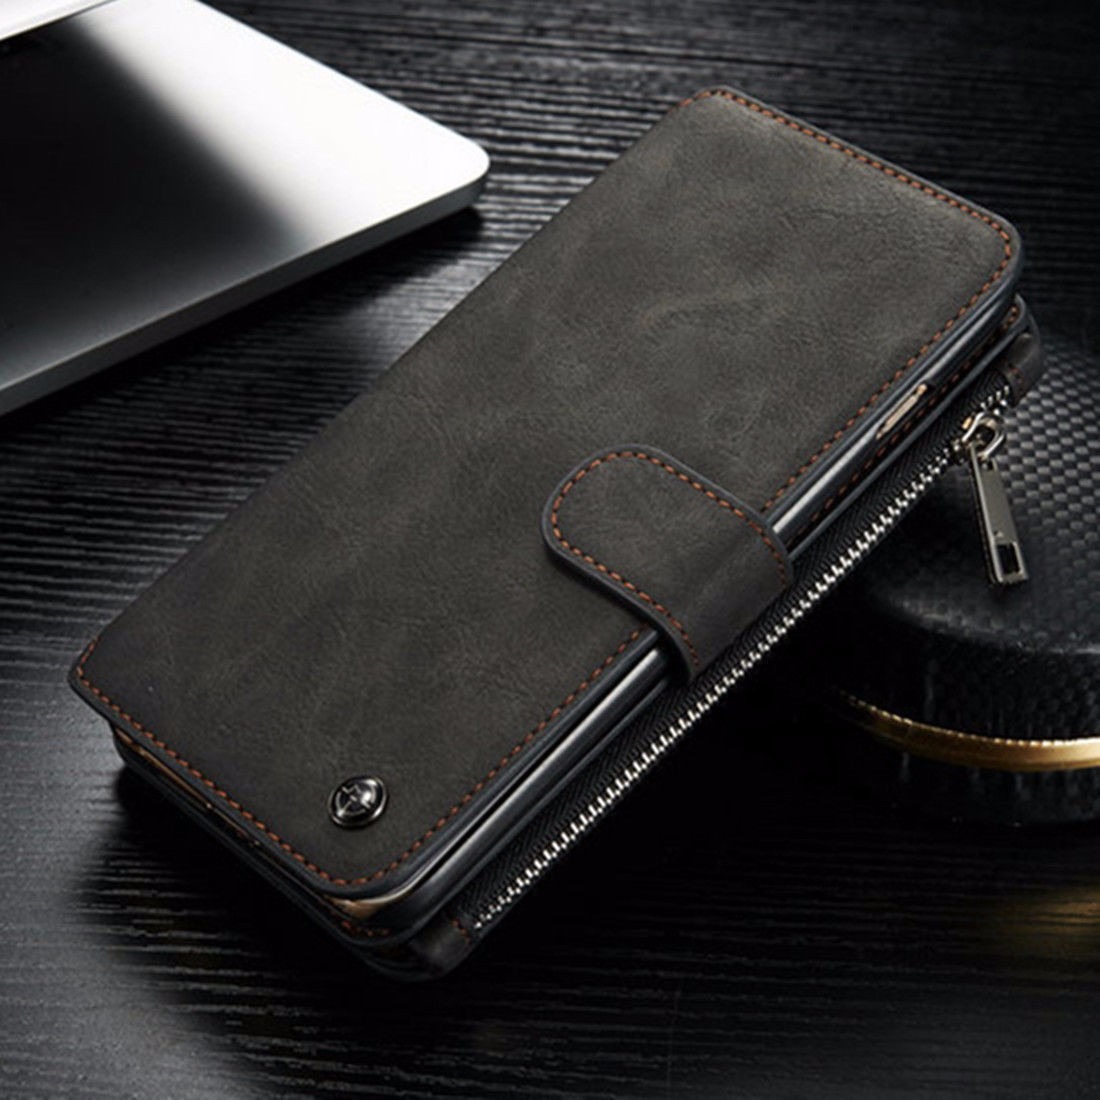 Mujjo presenta su billetera-funda de piel para el iPhone 6